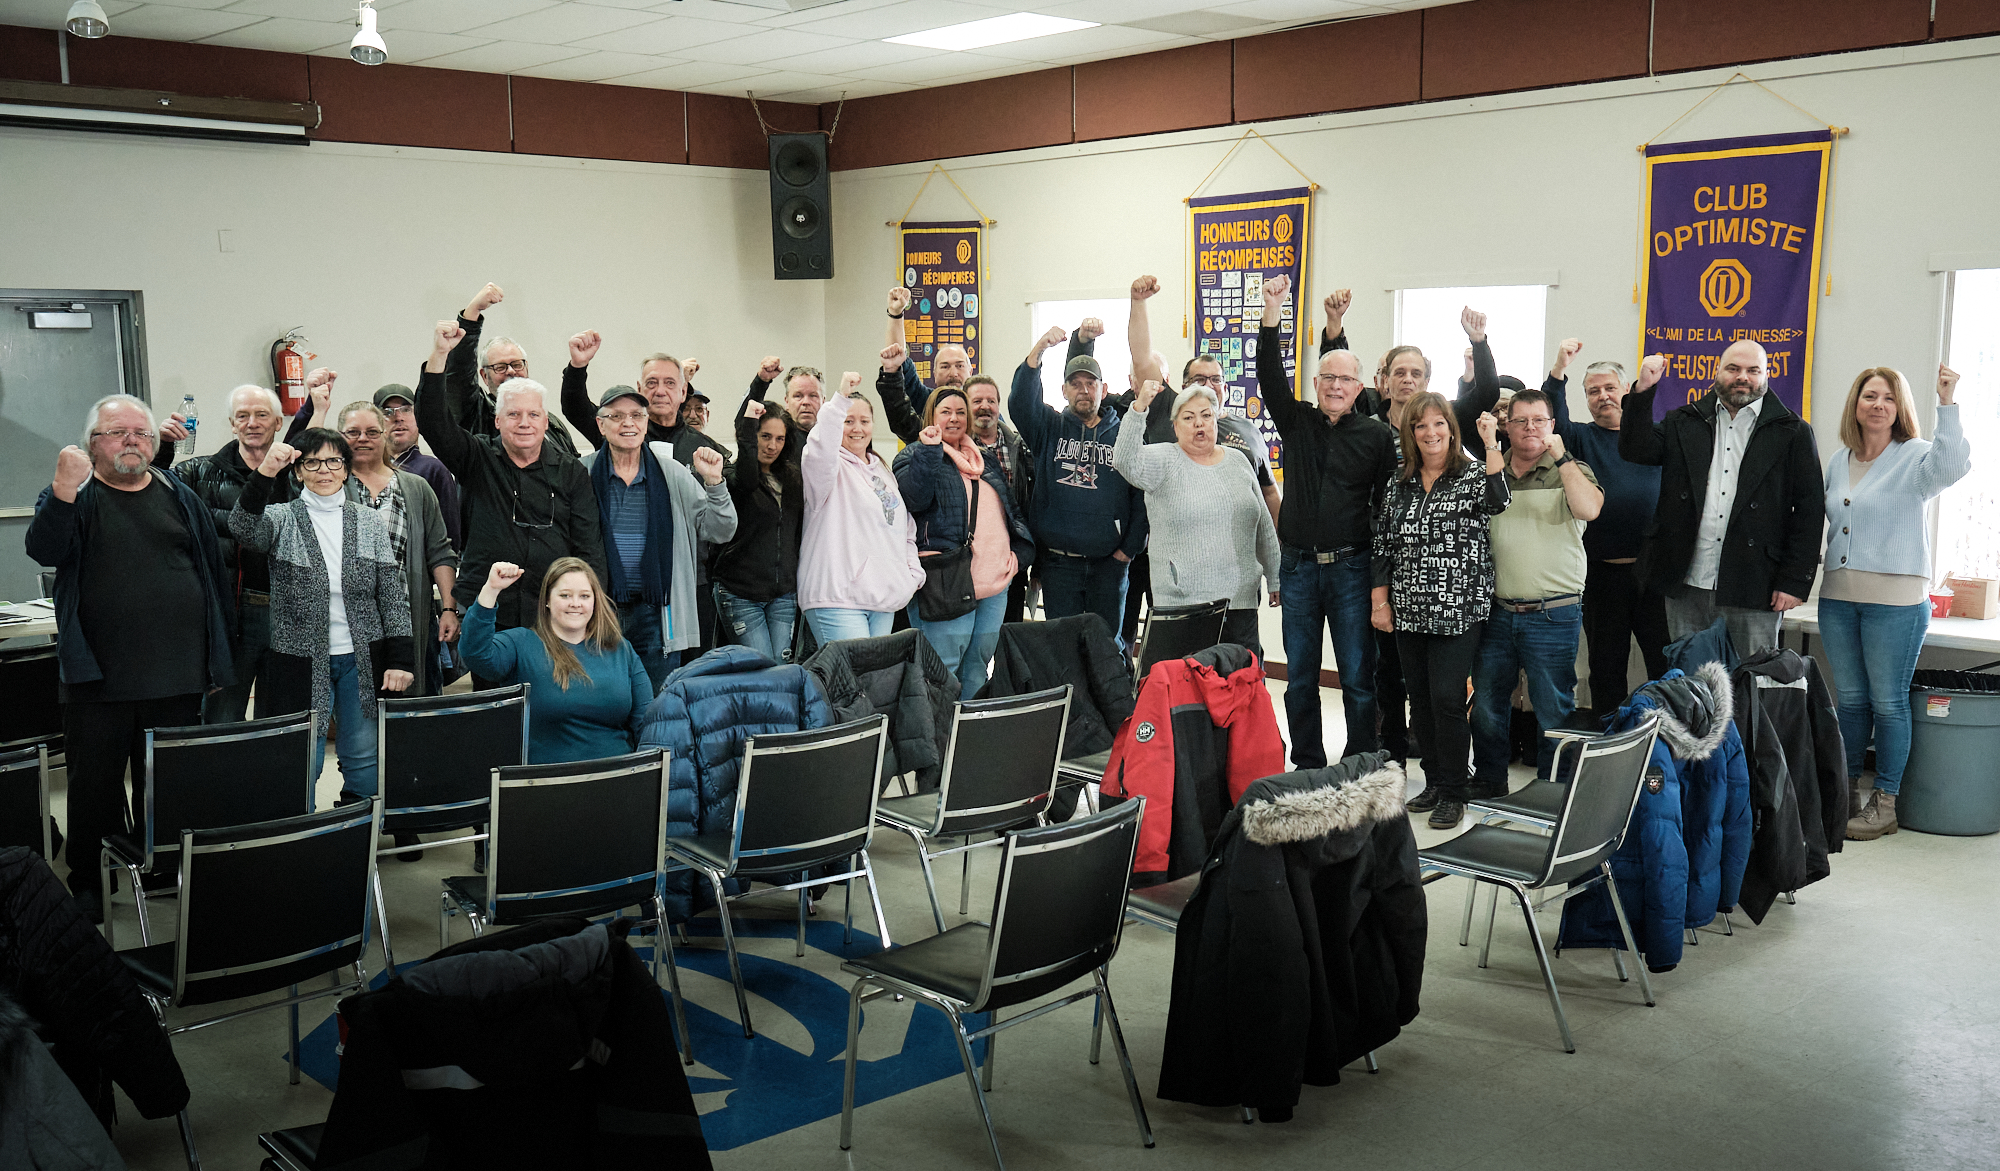 Les membres du syndicat en assemblée générale ce samedi 21 janvier - Photo : Dominic Morissette